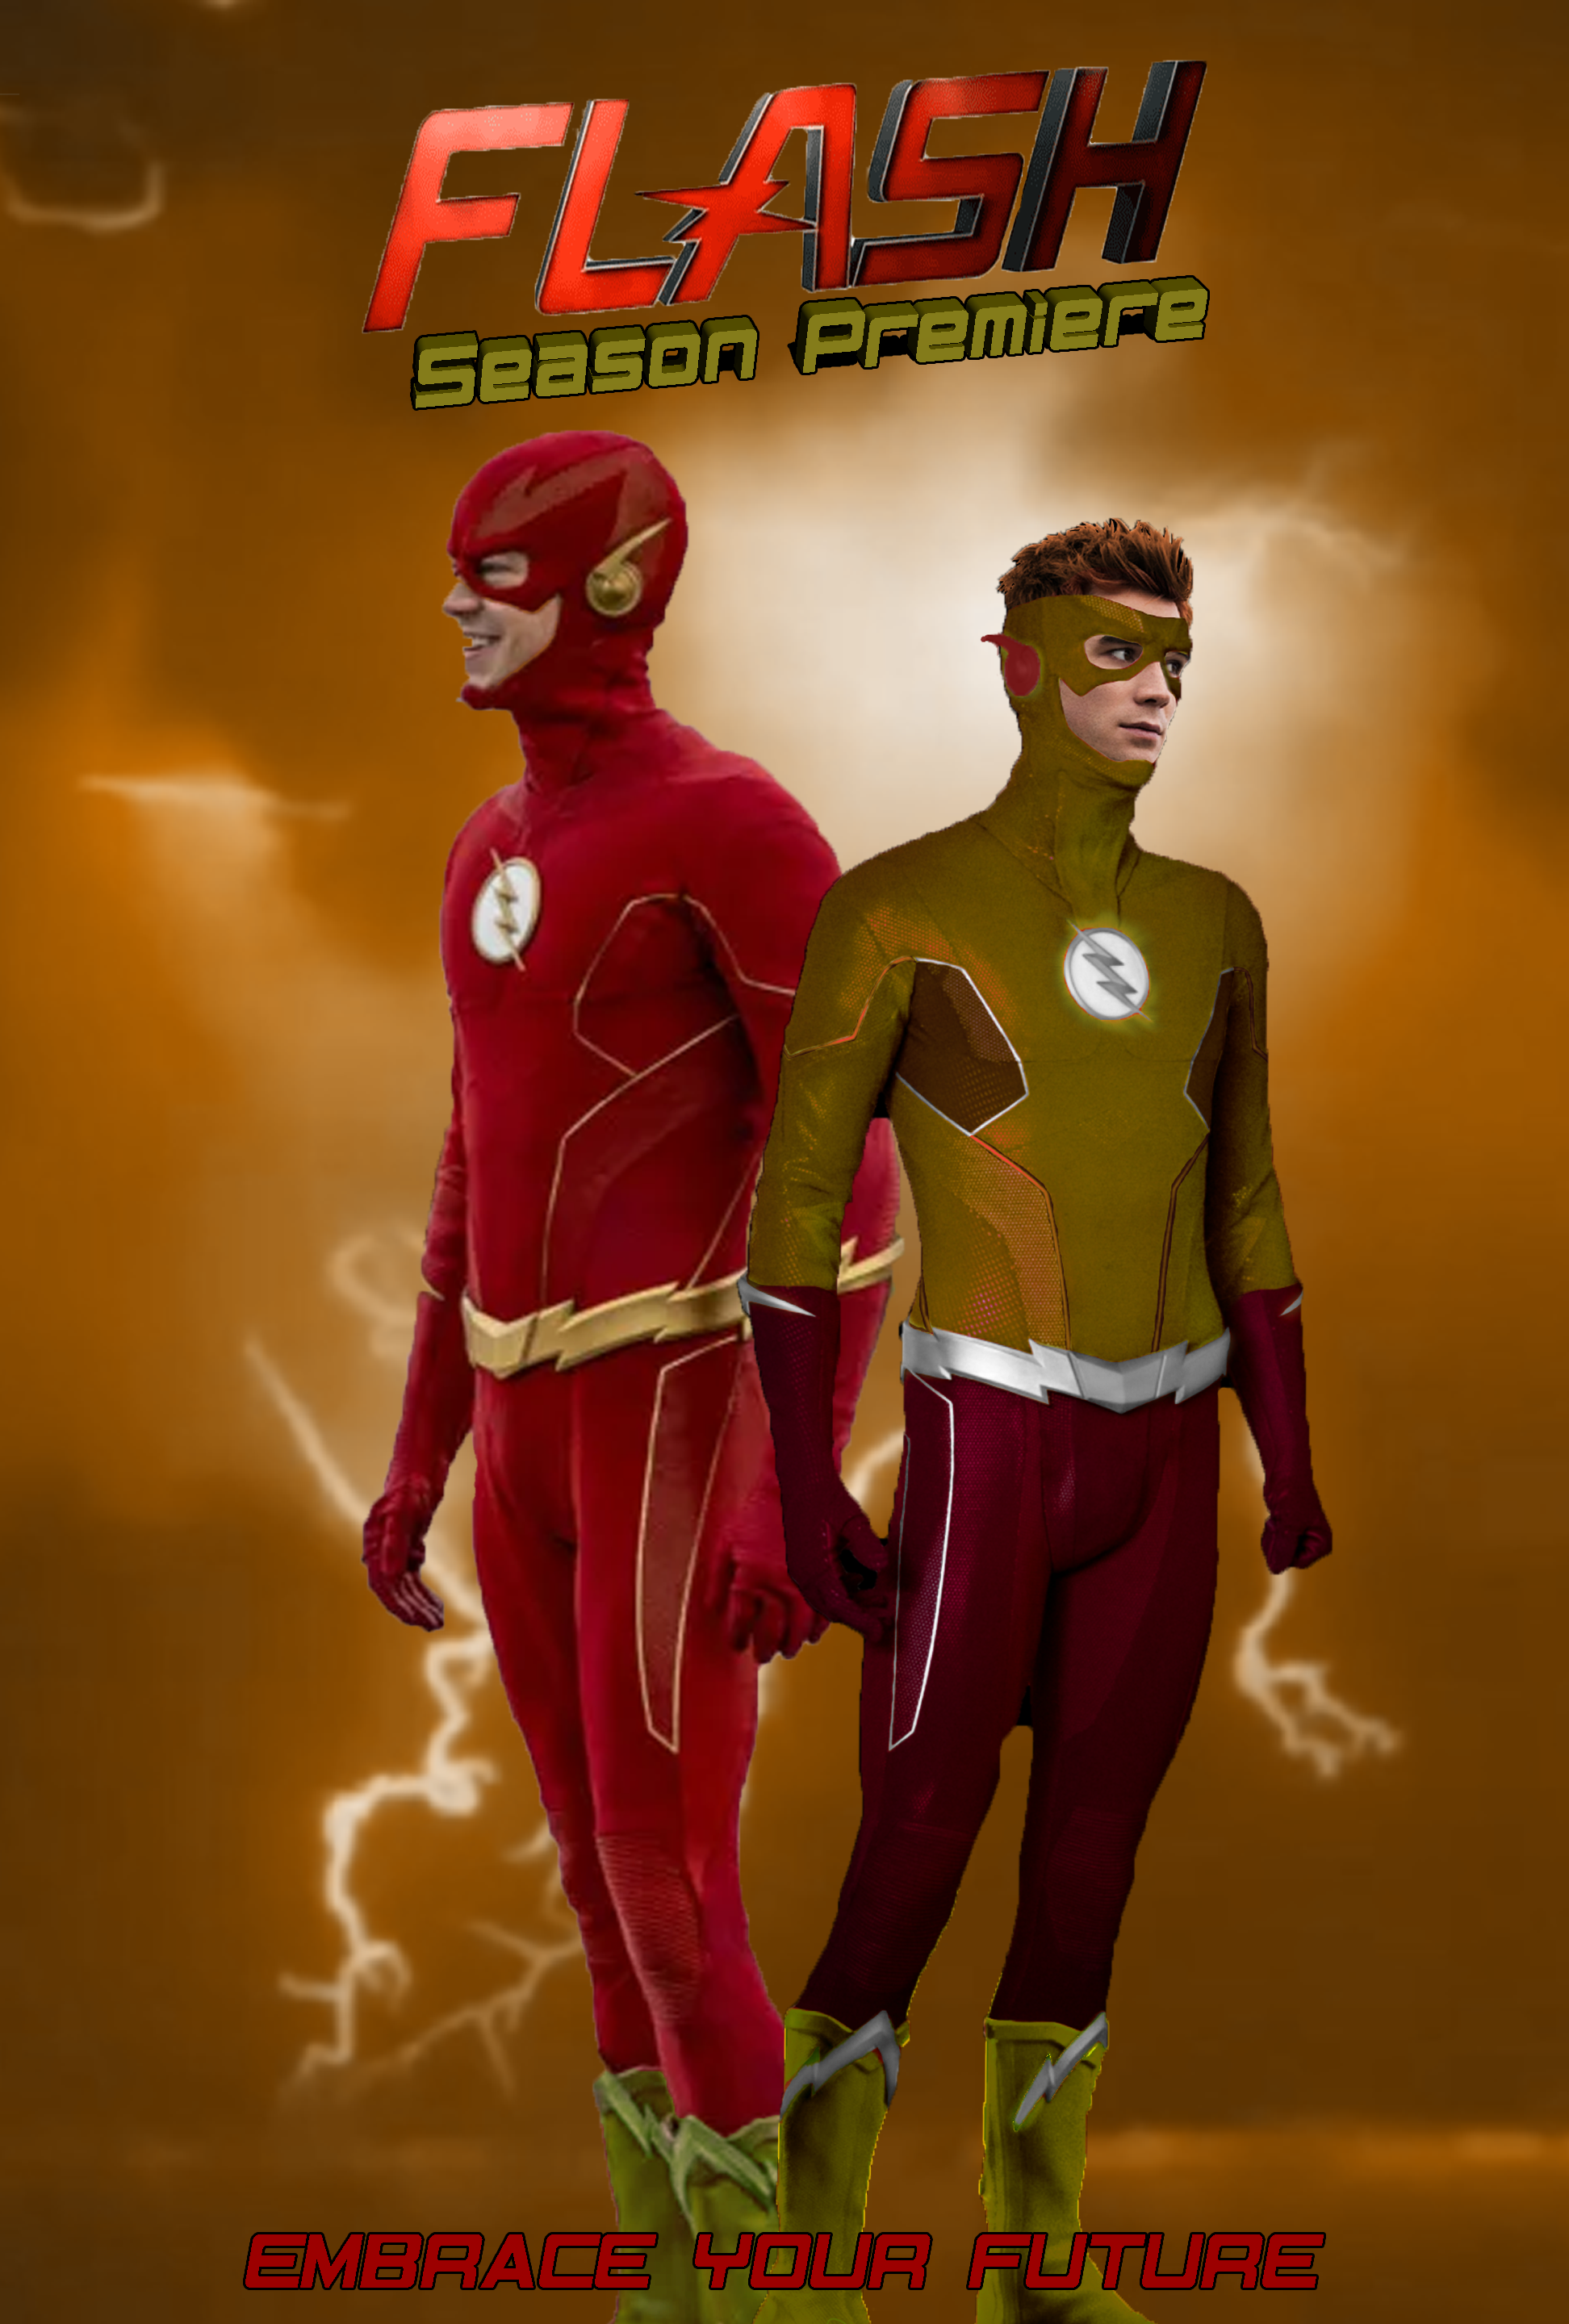 The Flash (season 8) - Wikipedia